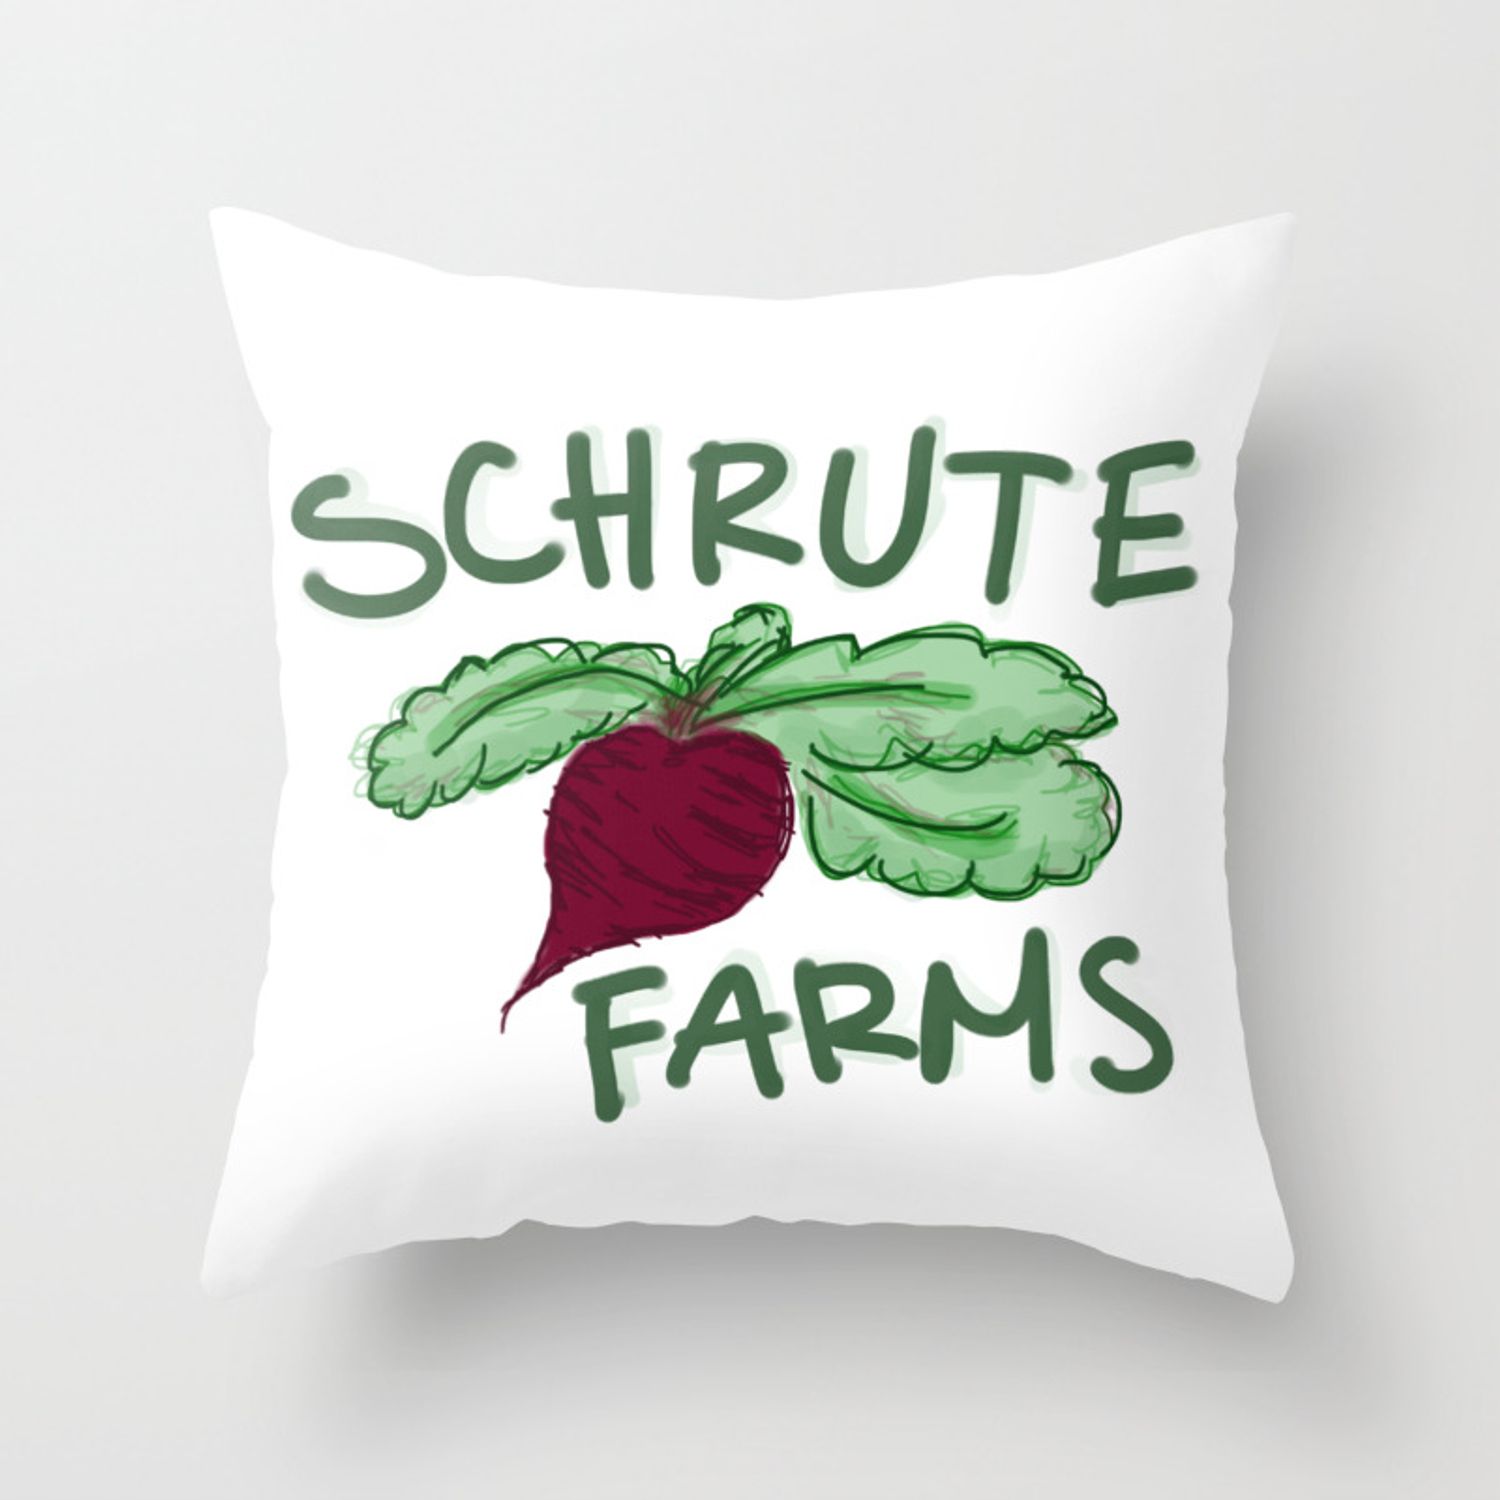 Schrute Farms Throw Pillow